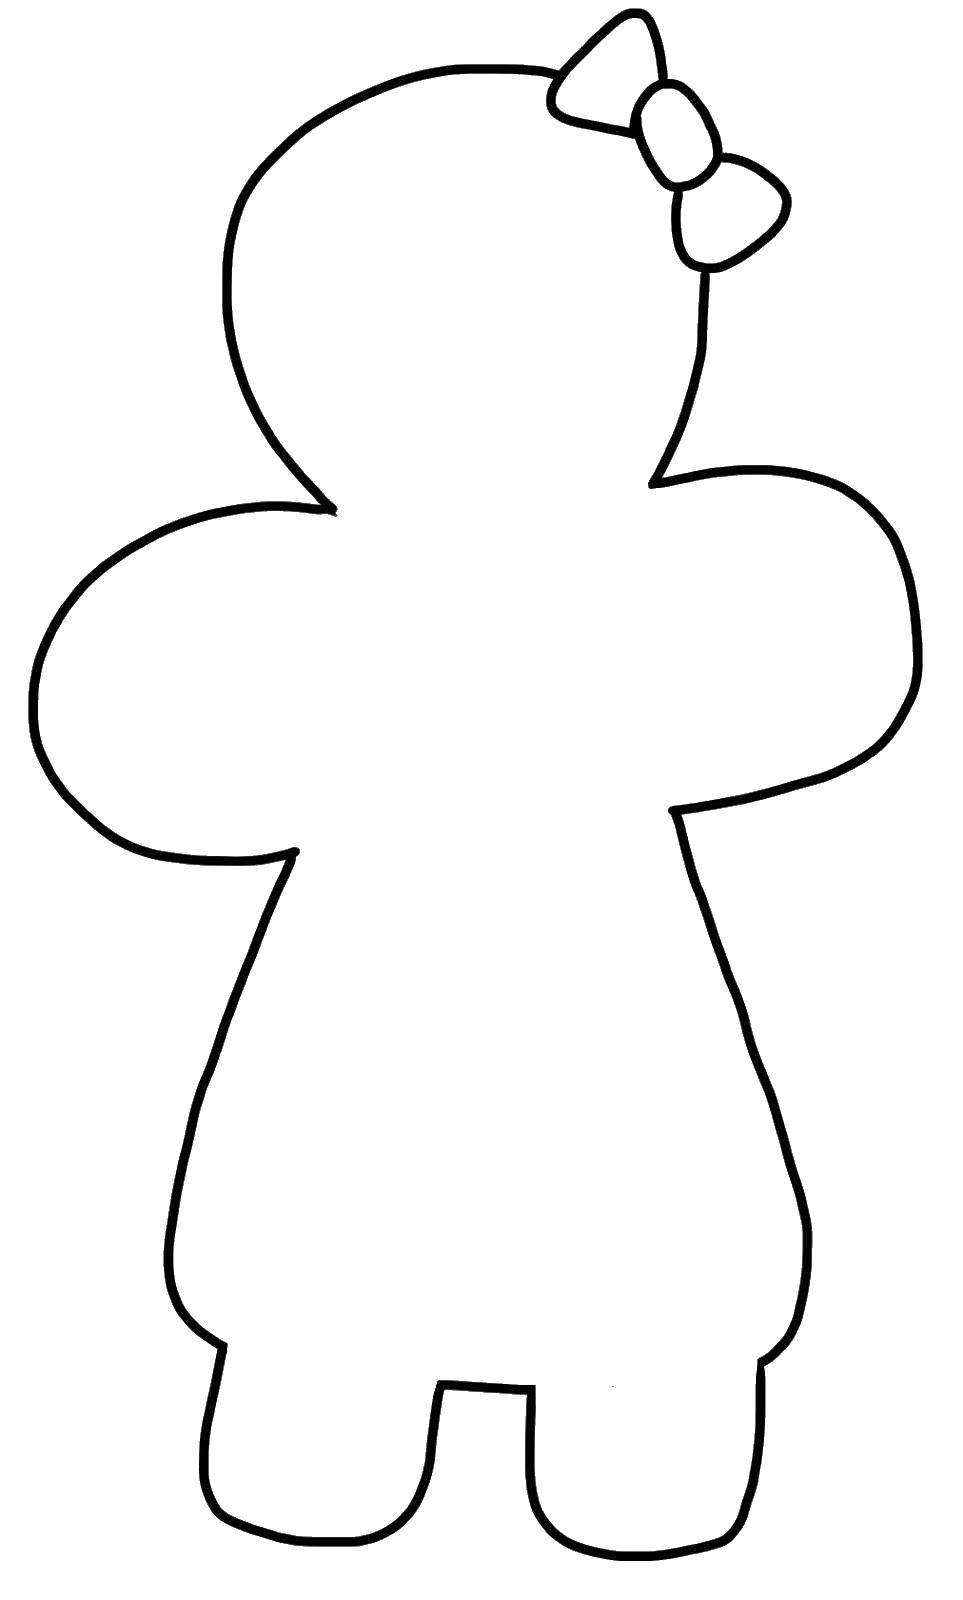 Название: Раскраска Контур девочки с бантиком. Категория: контур ребенка. Теги: контур, девочка, бантик.